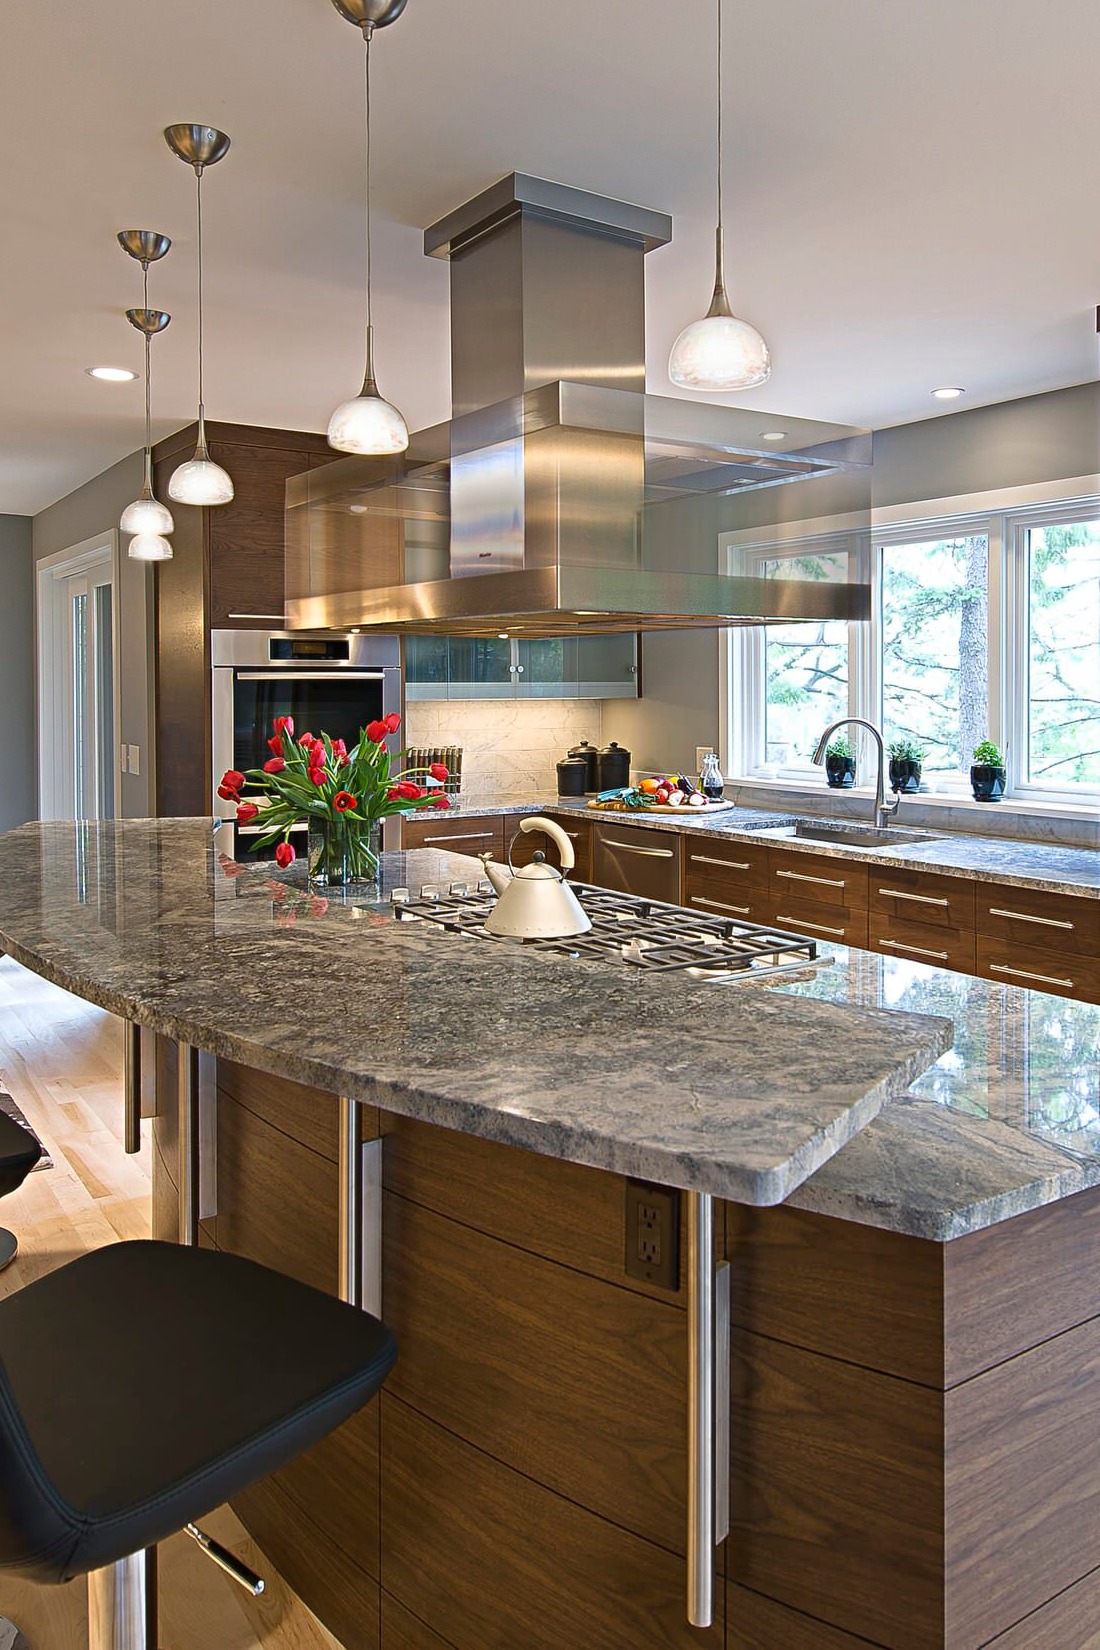 Azul Aran Granite Countertop Brown Modern Kitchen Cabinet Cream Hardwood Floor